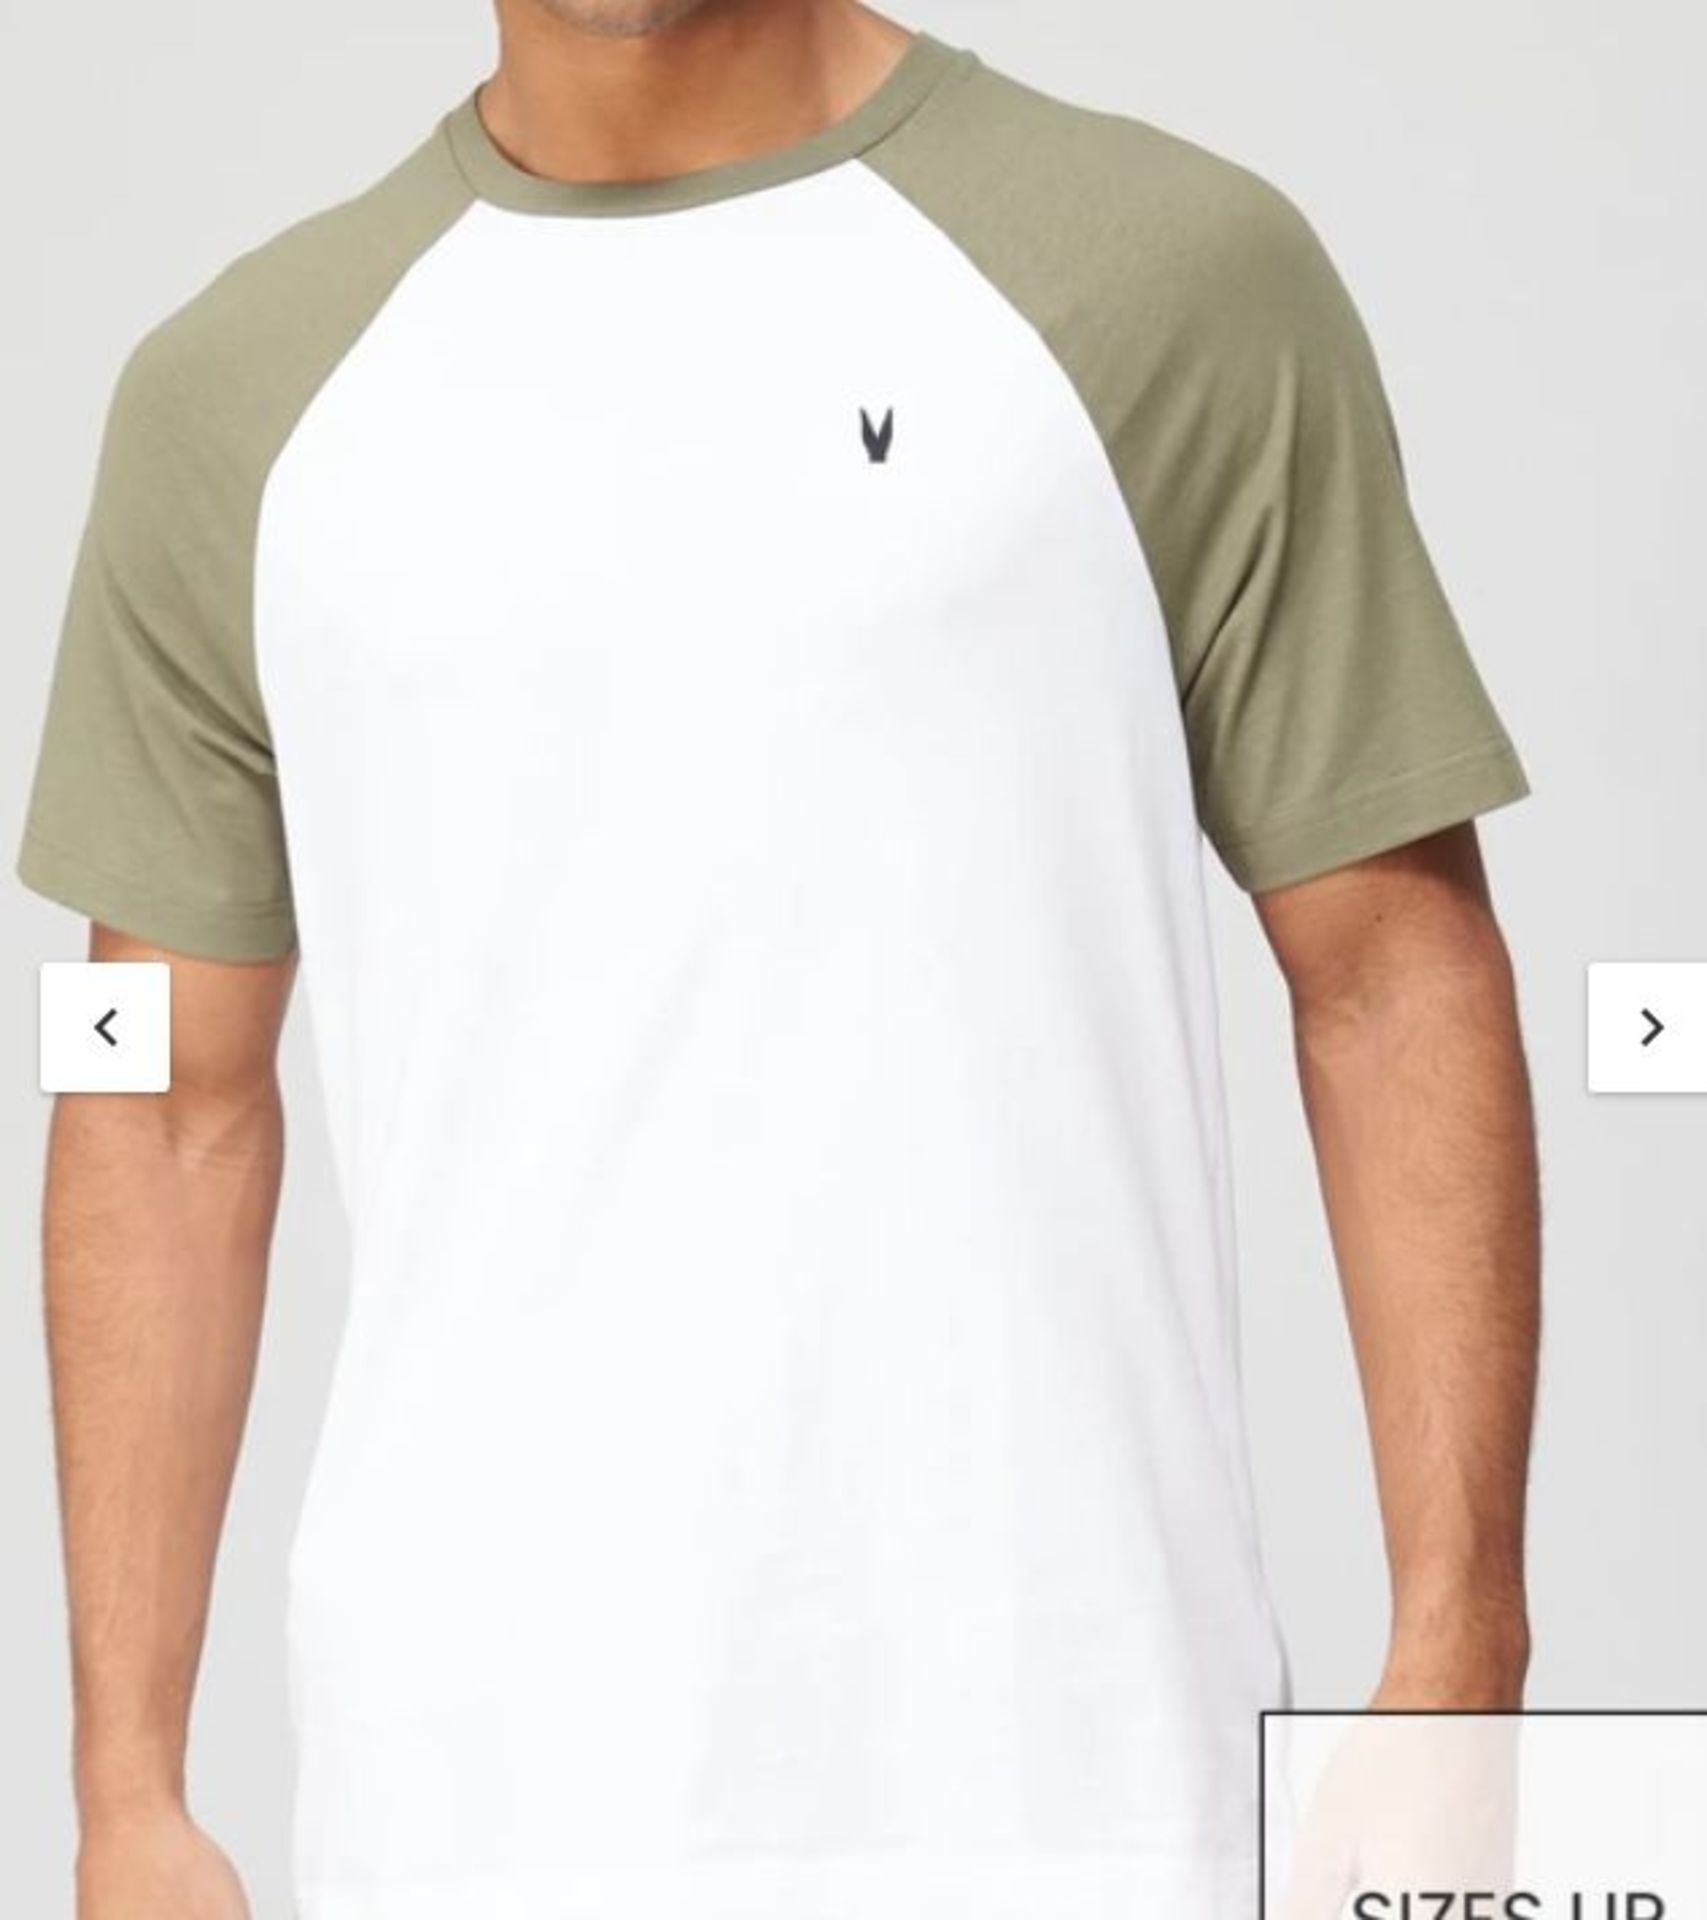 Raglan T-shirt Mens Brand New Size M Khaki/White